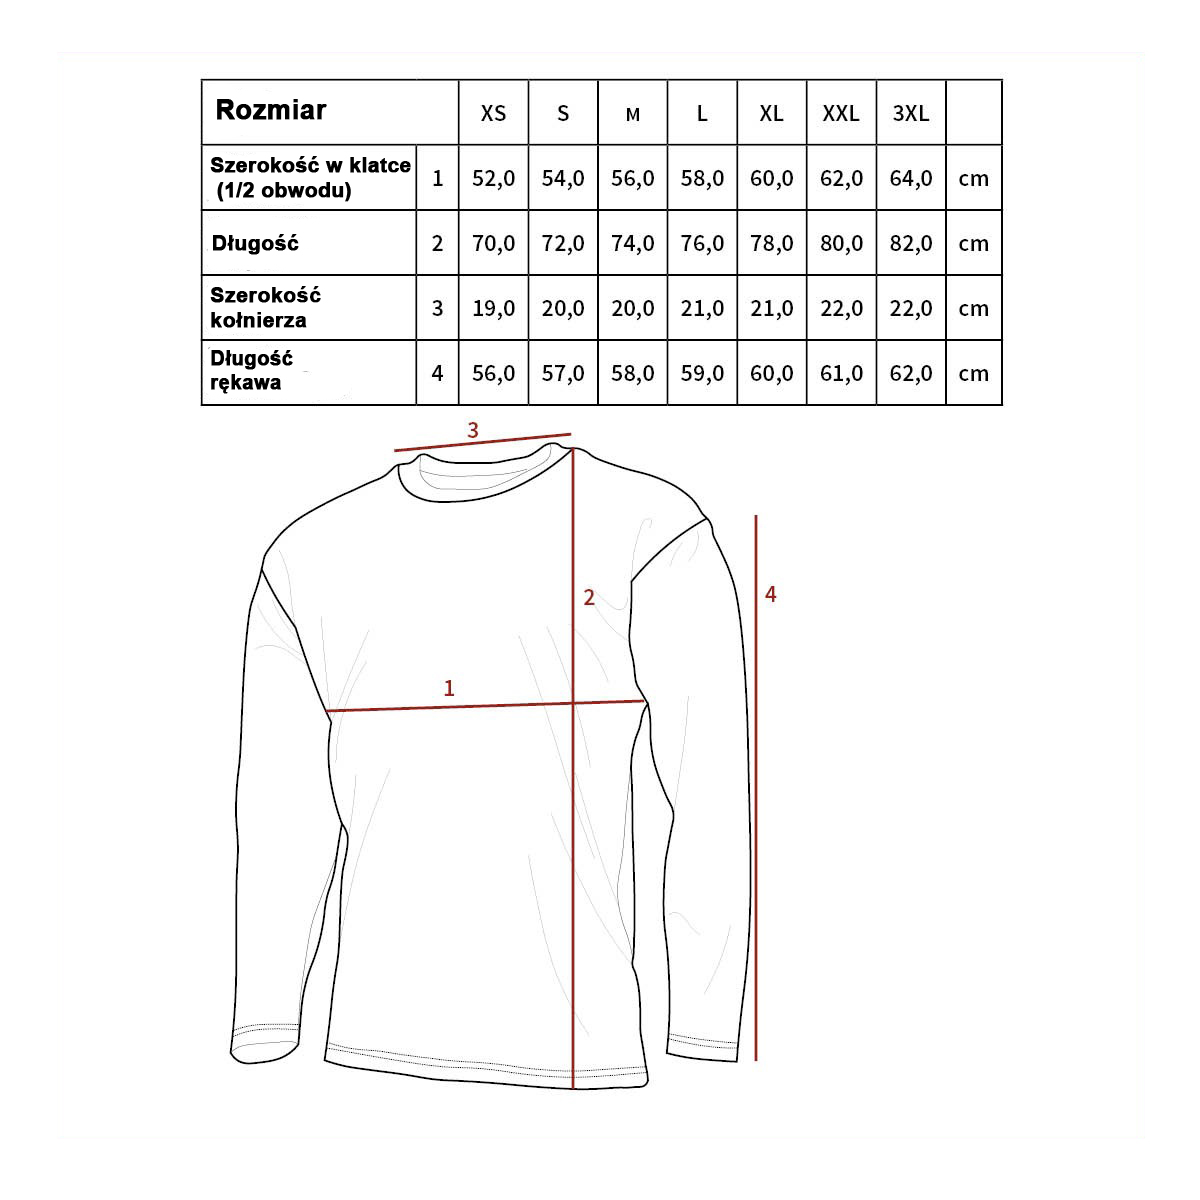 Tabela Koszule MFH z długim rękawem.jpg (174 KB)